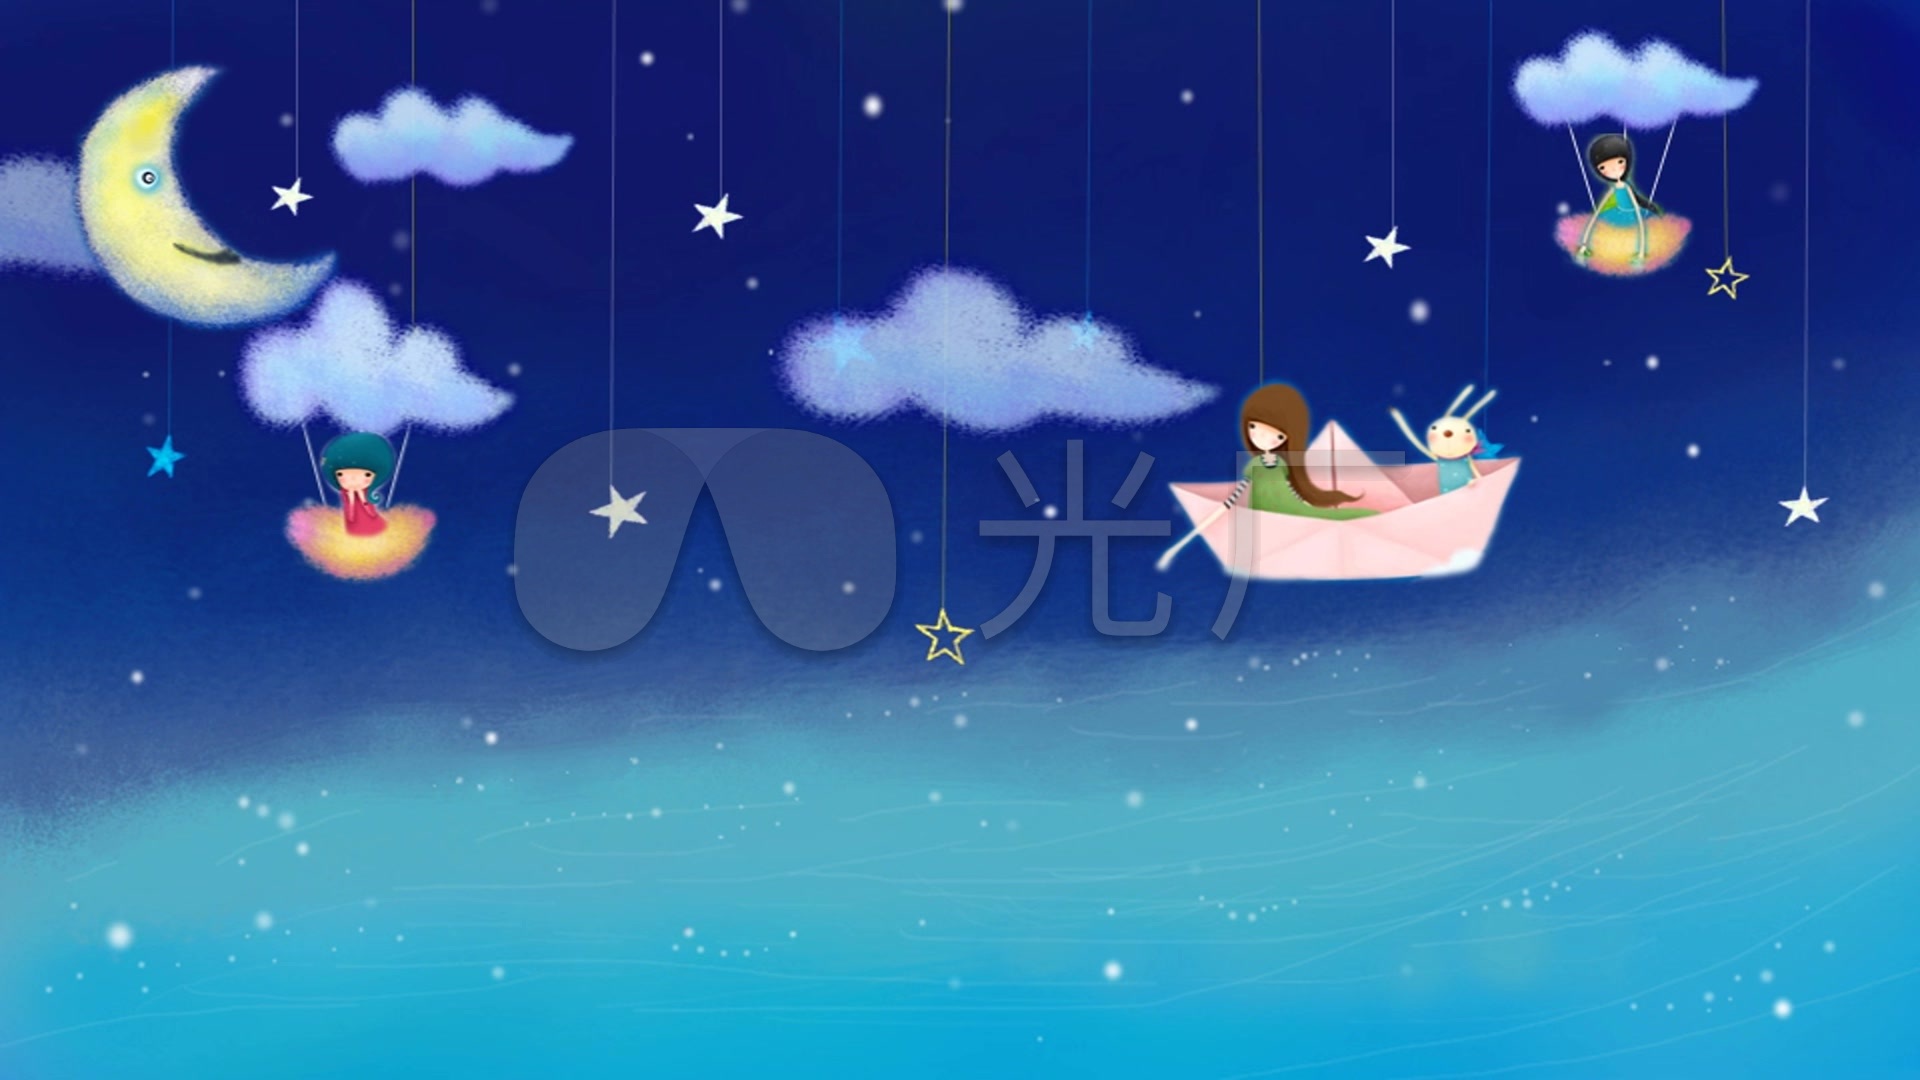 梦幻卡通夜晚星星月亮船led背景